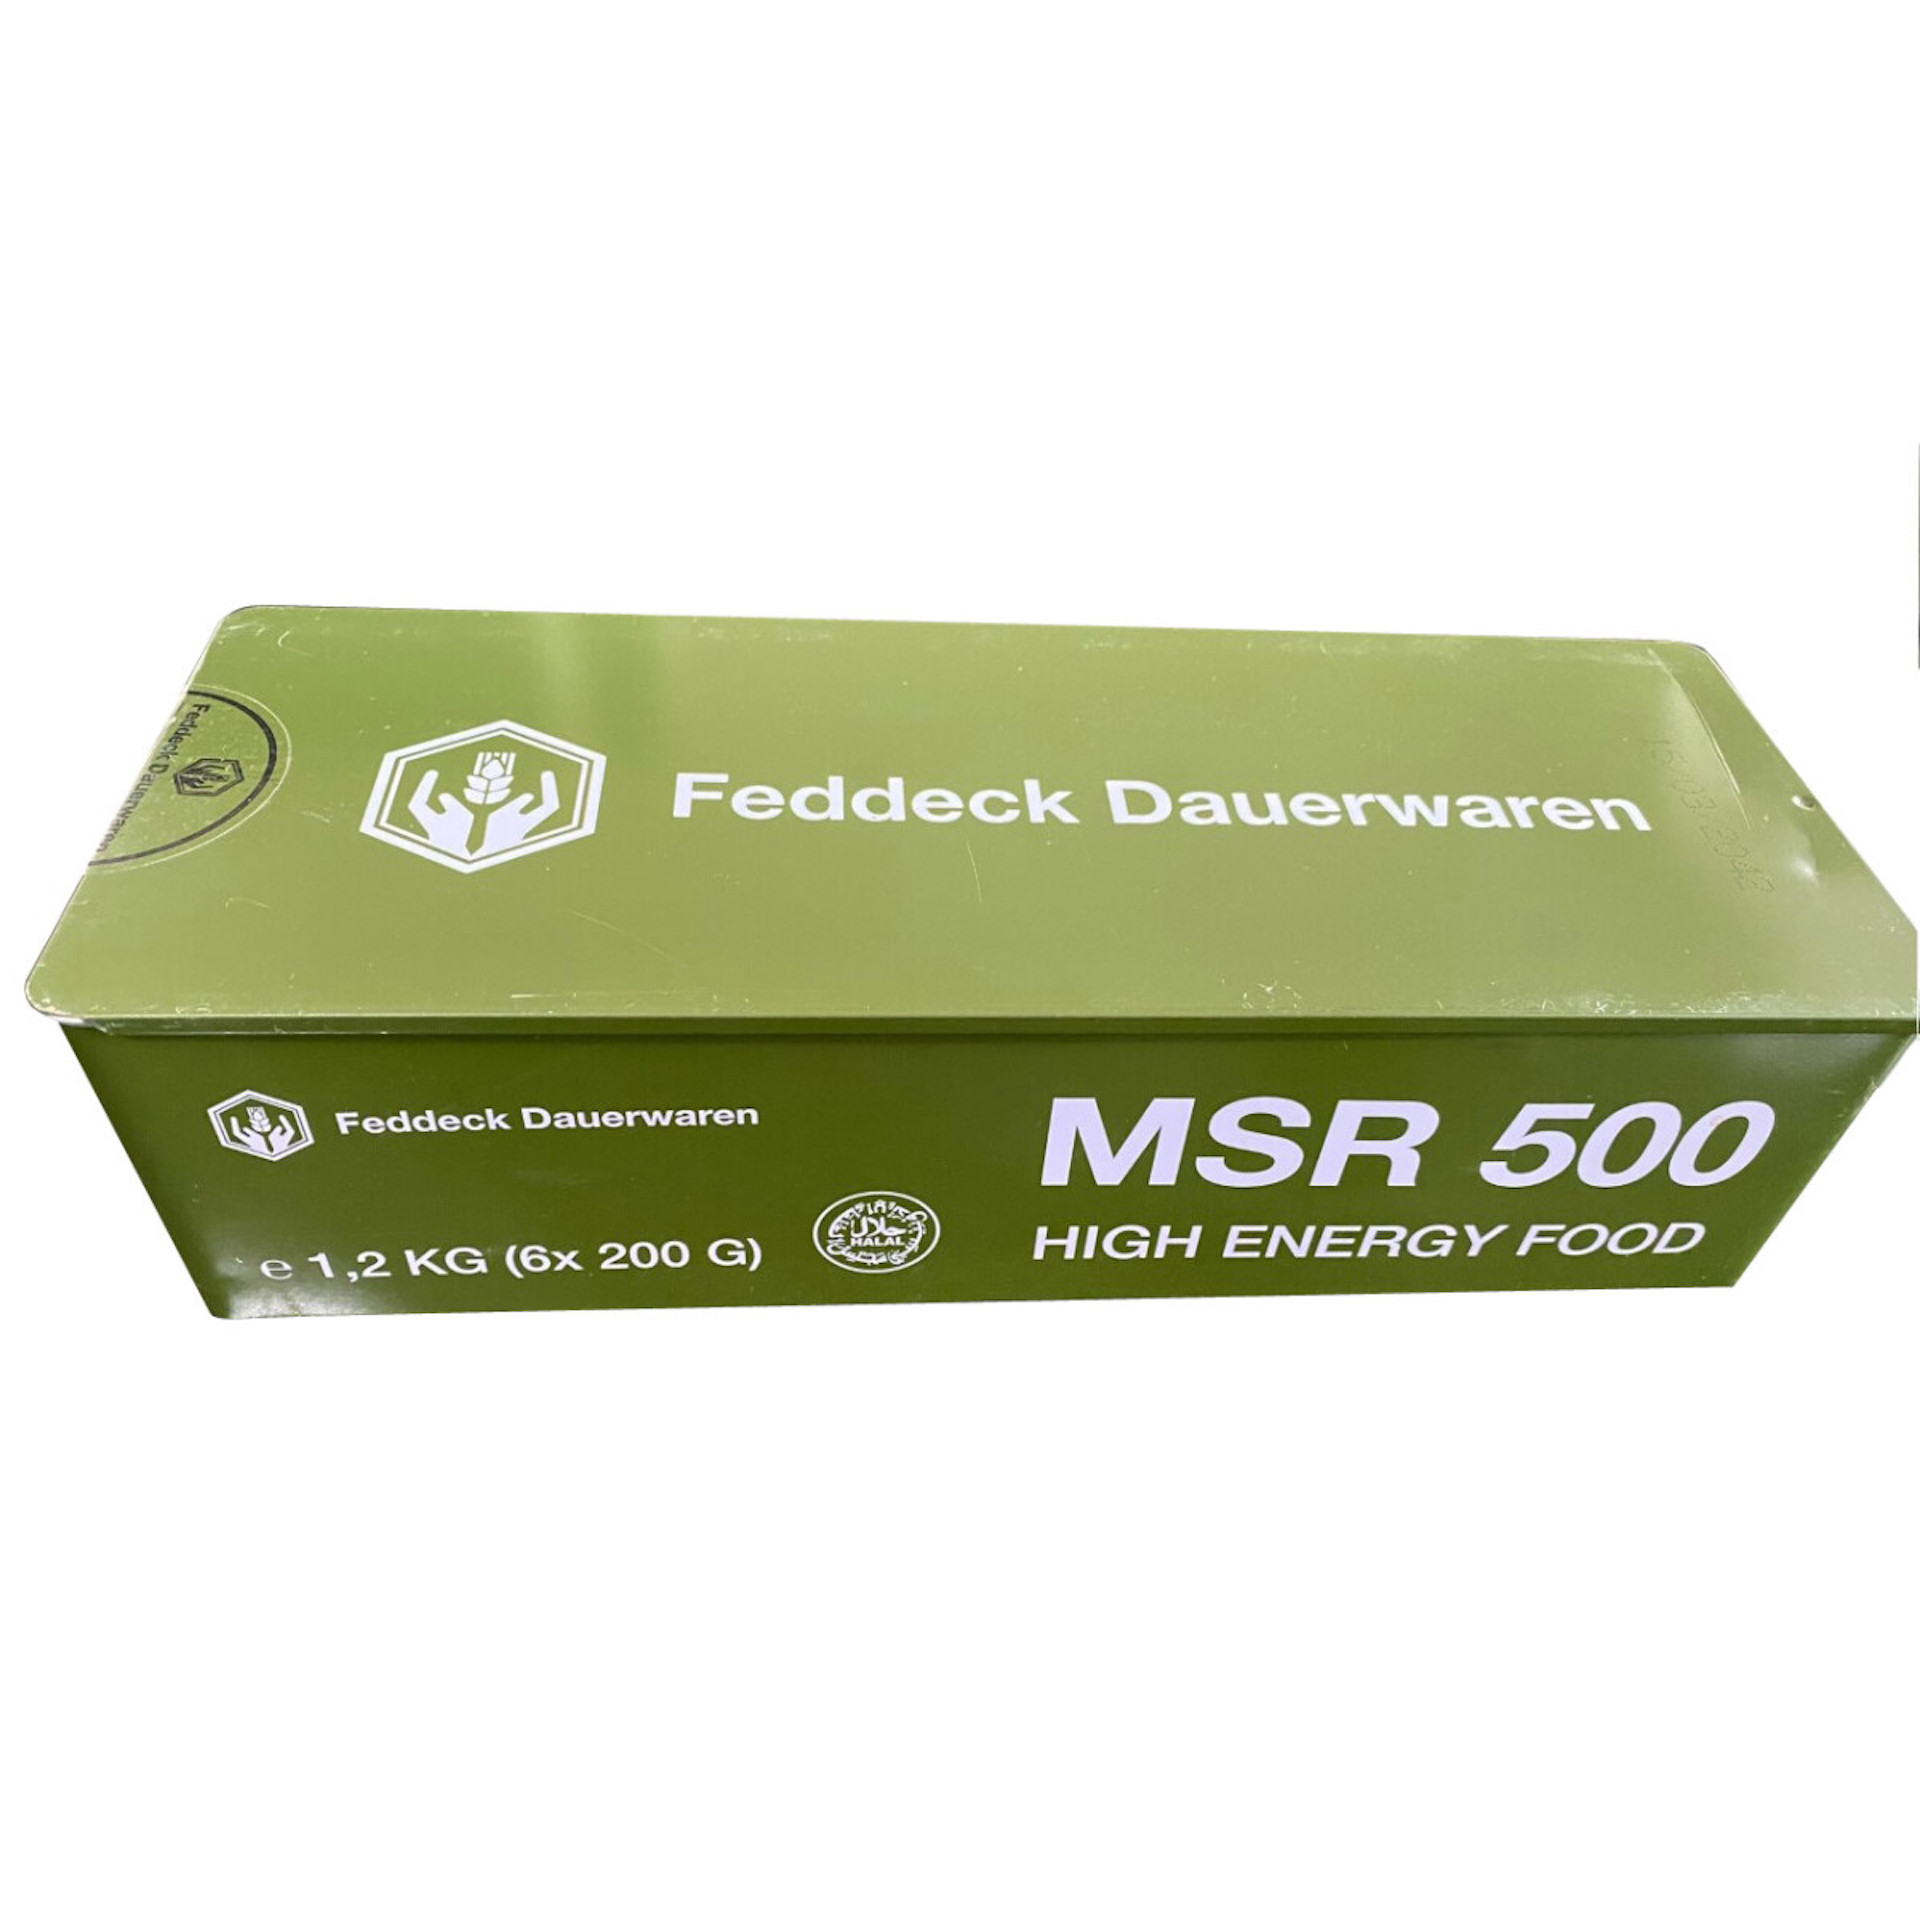 FEDDECK MSR 500 High Energie Food in Metalldose 6 x 200g